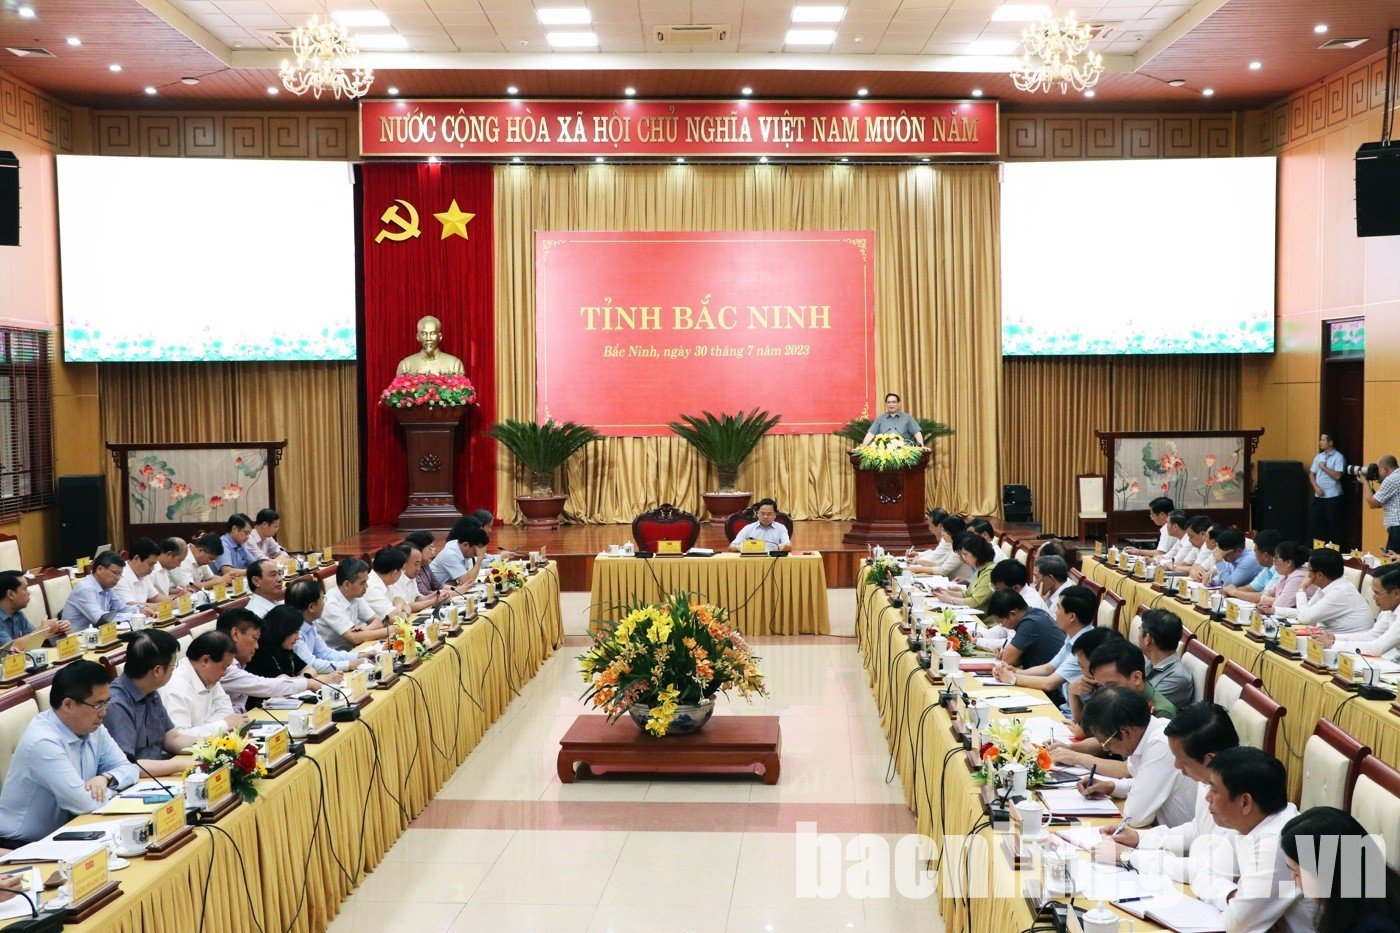 Thủ tướng Chính phủ Phạm Minh Chính làm việc với tỉnh Bắc Ninh